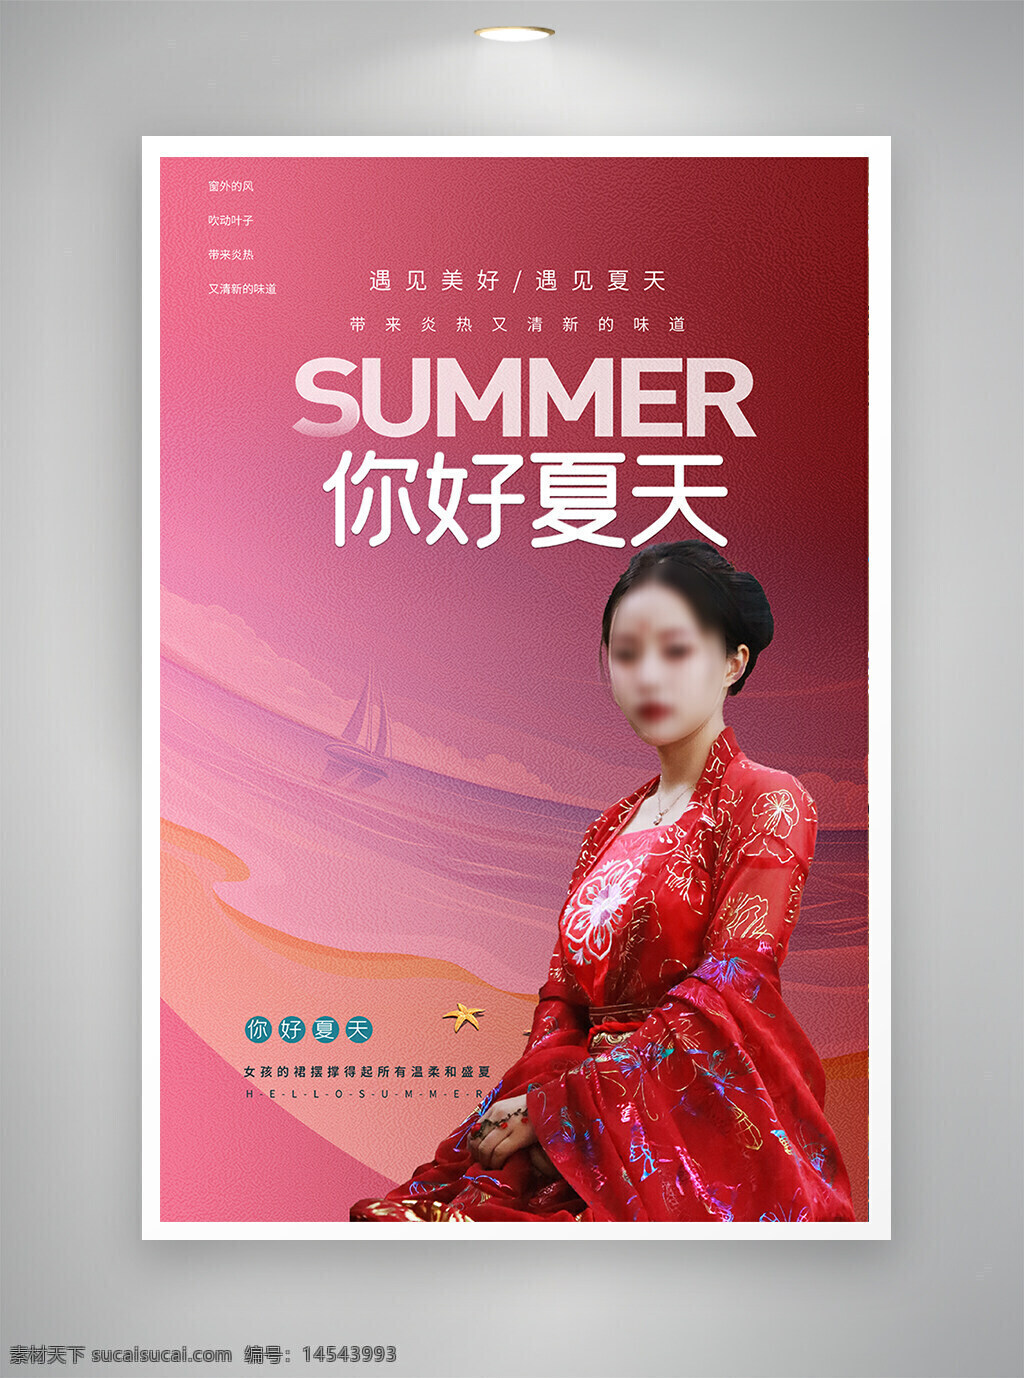 古风海报 中国风海报 促销海报 节日海报 你好夏天